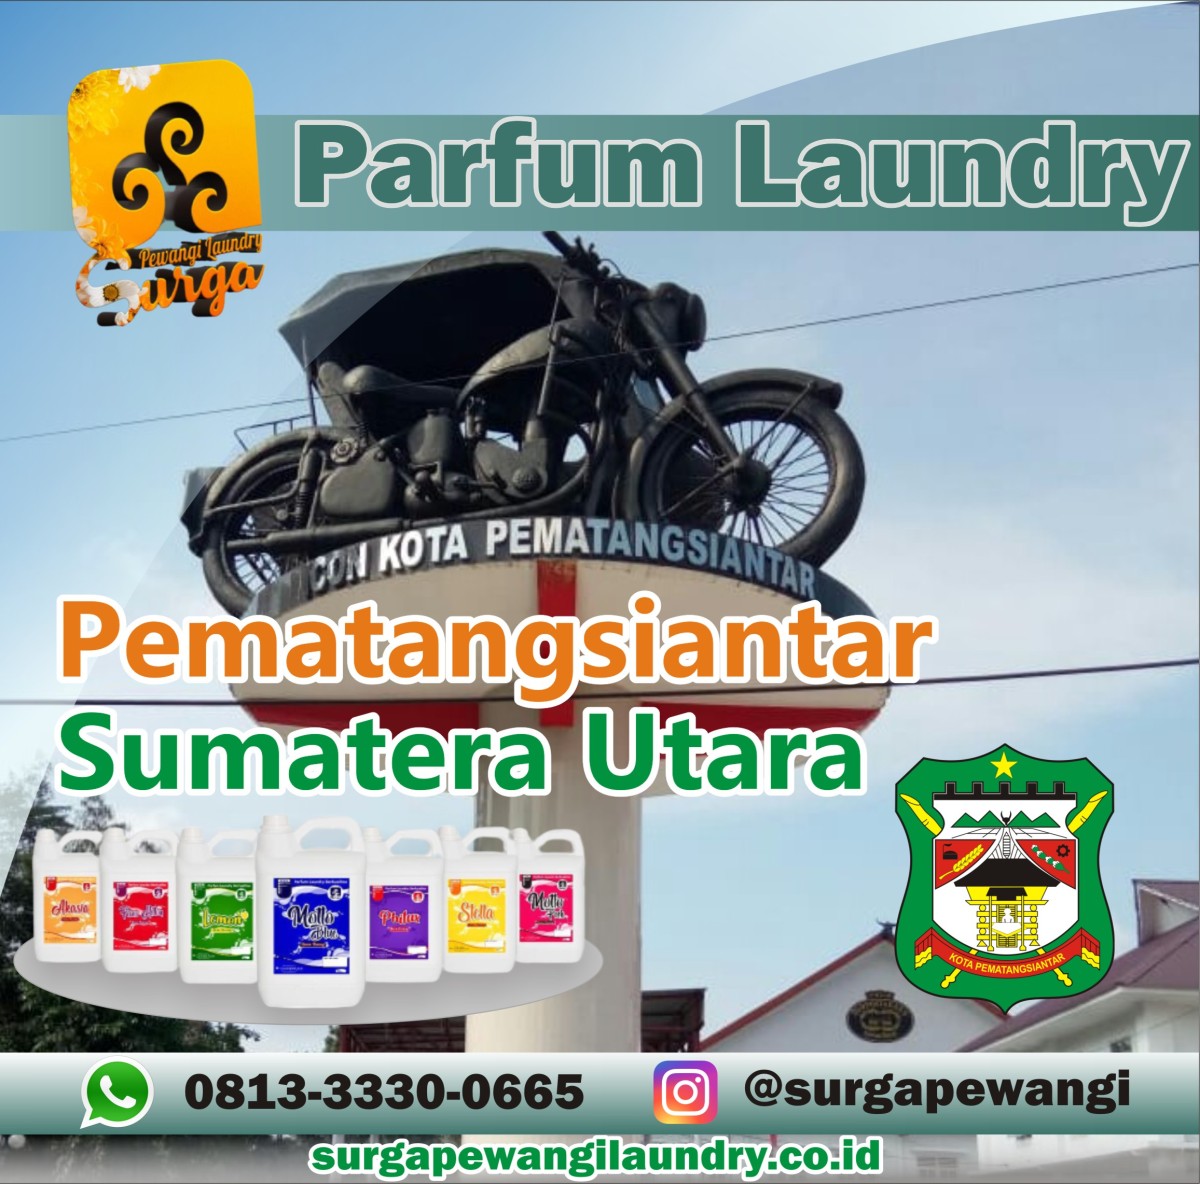 Parfum Laundry Kota Pematangsiantar, Sumatera Utara